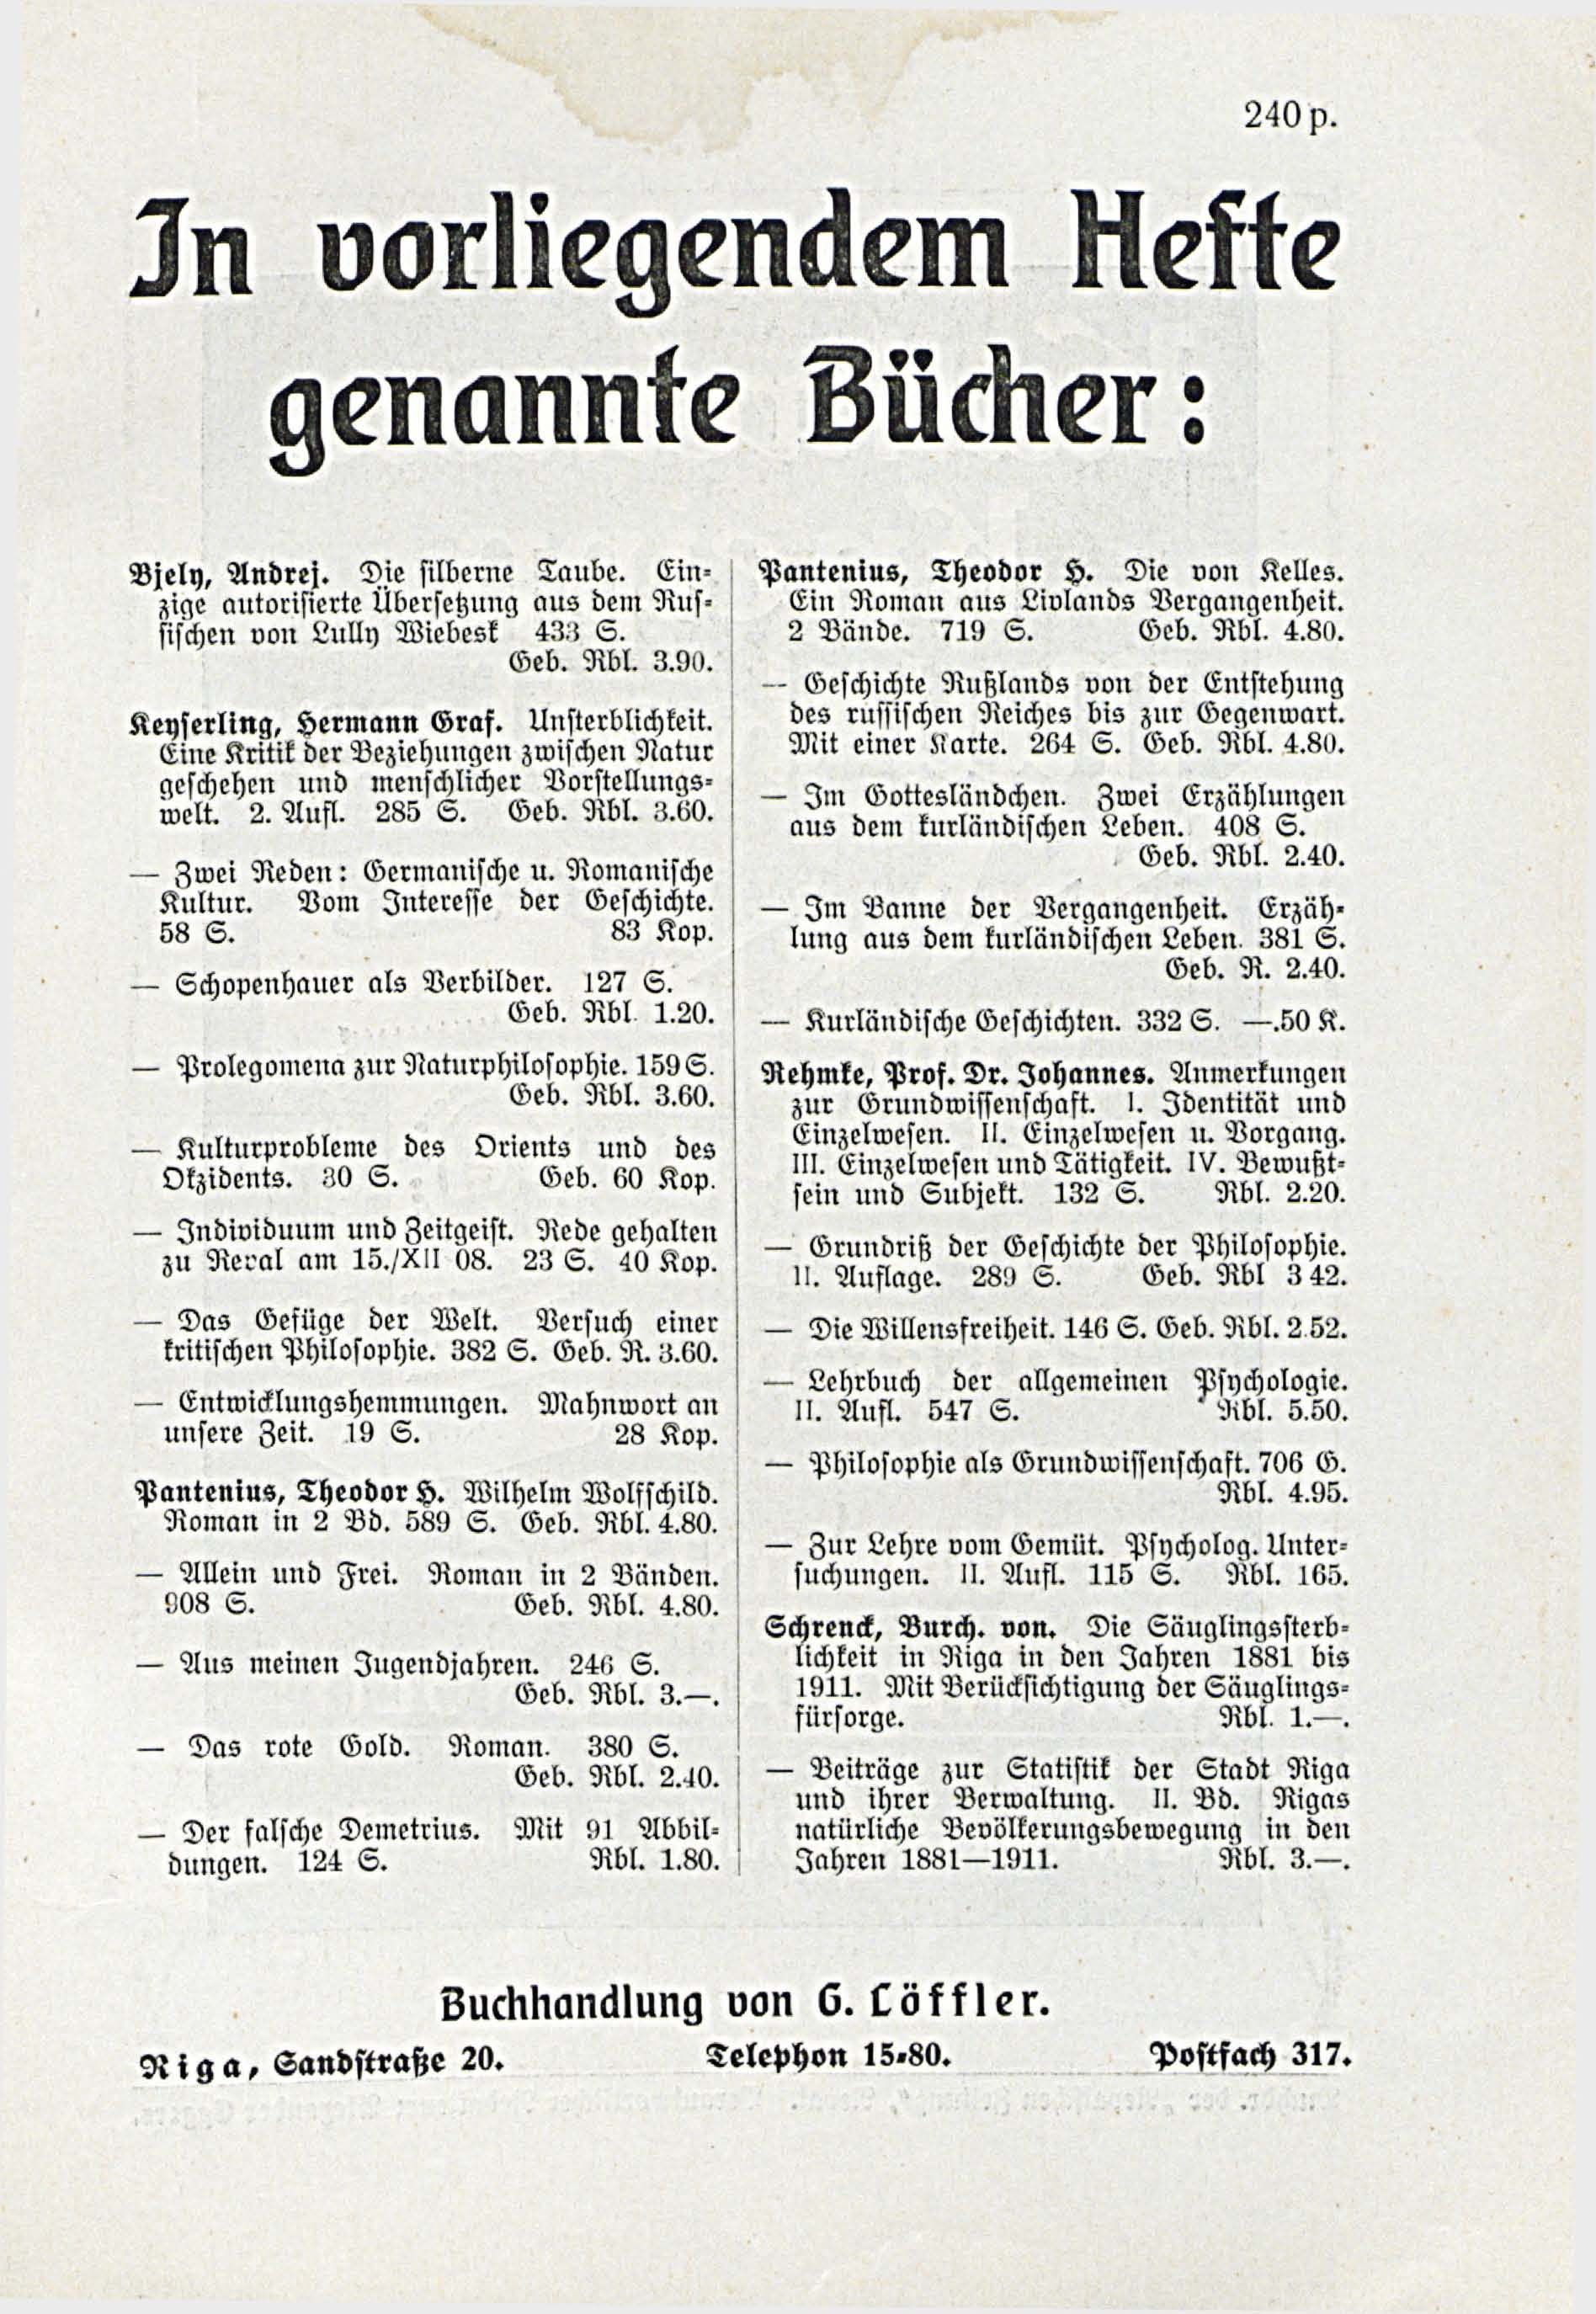 Deutsche Monatsschrift für Russland [3/03] (1914) | 97. (251) Main body of text